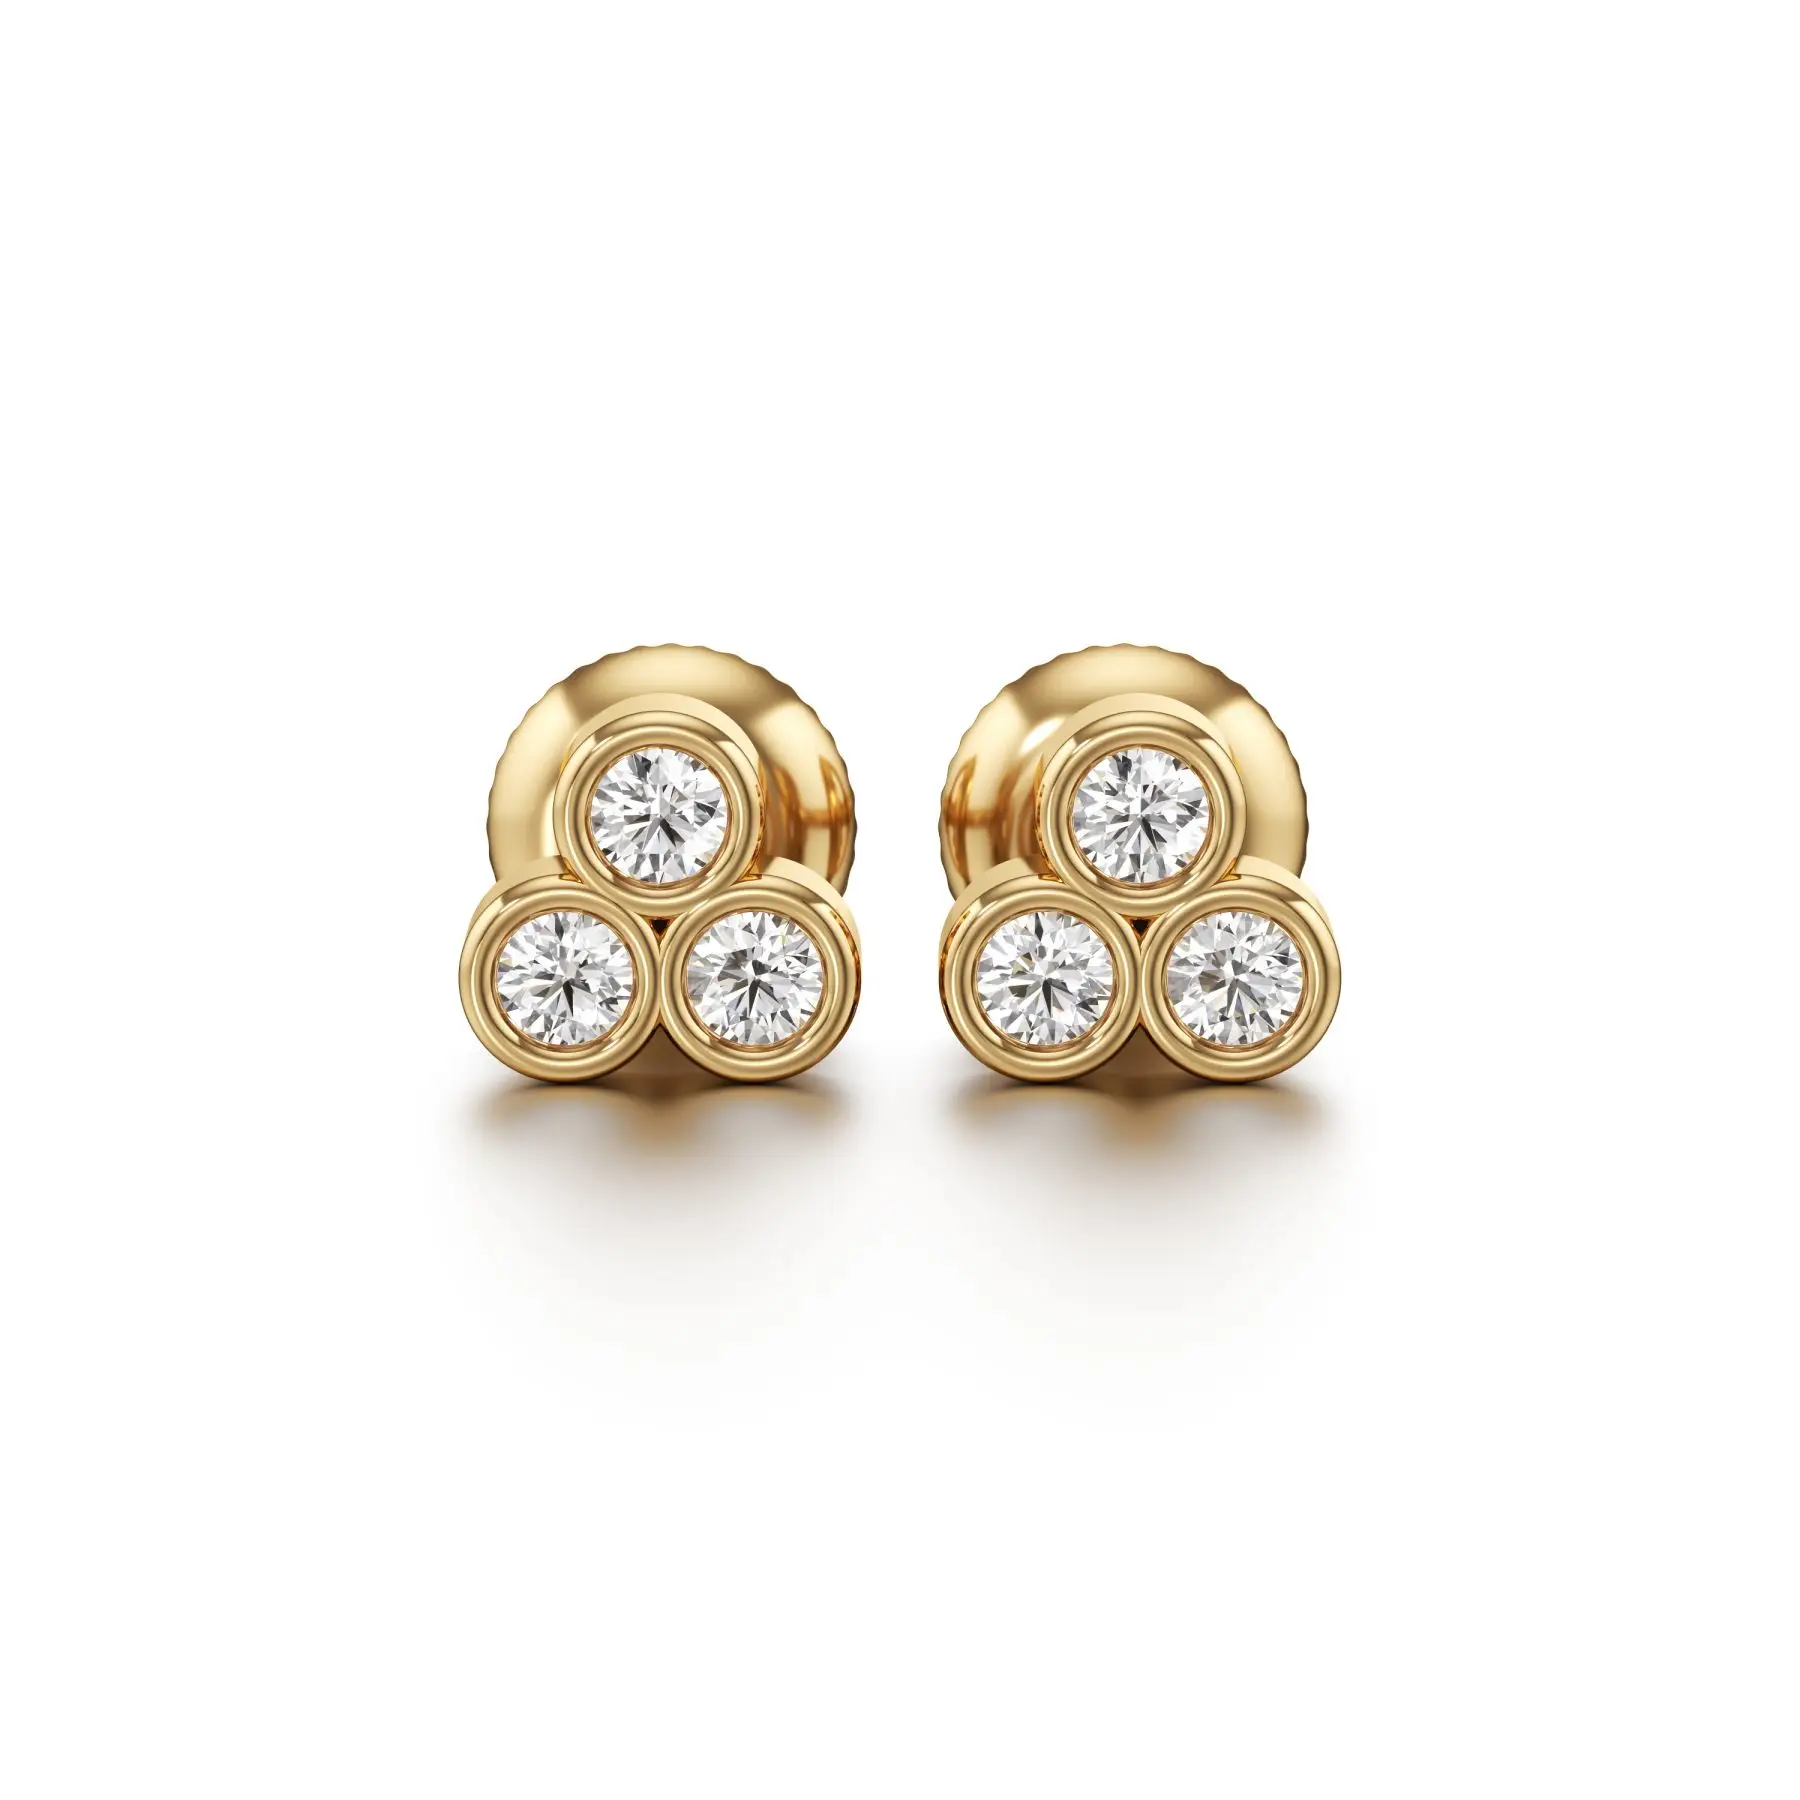 Triple Bling Diamond Earrings in Yellow 10k Gold